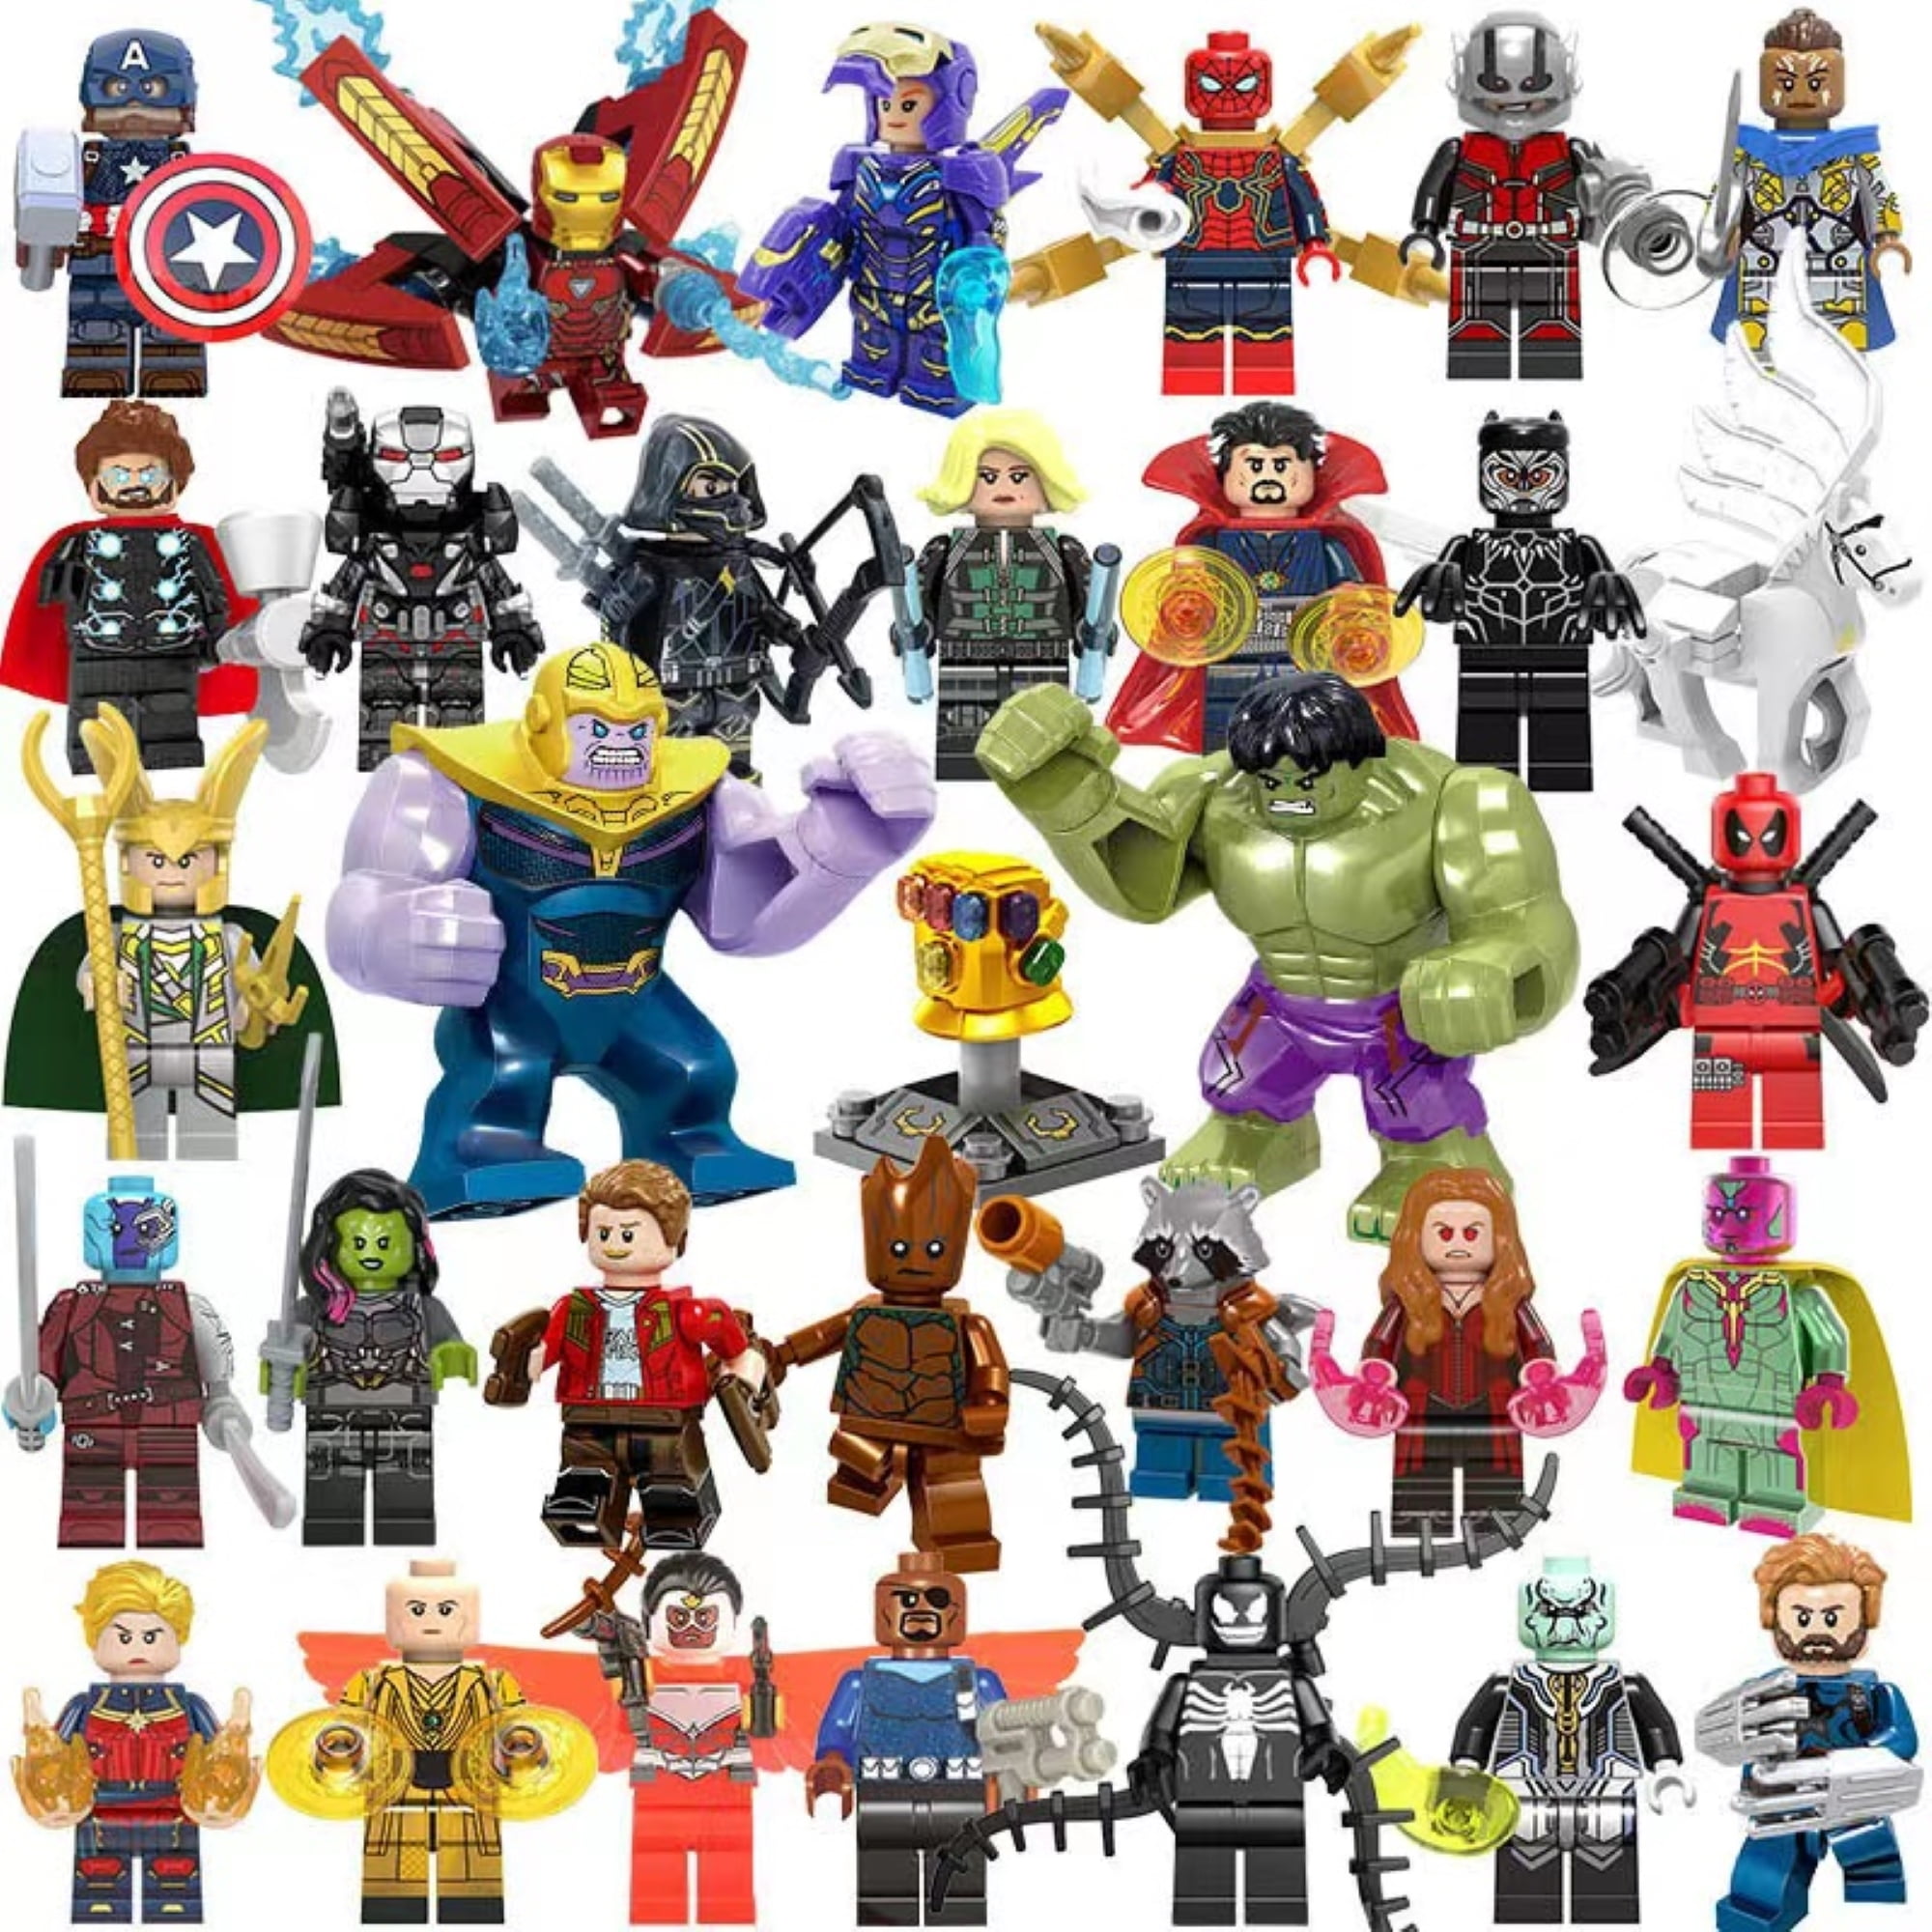 32 Pcs Action Figures Building Blocks Toys Set, Collectible 1.77-2.95 ...